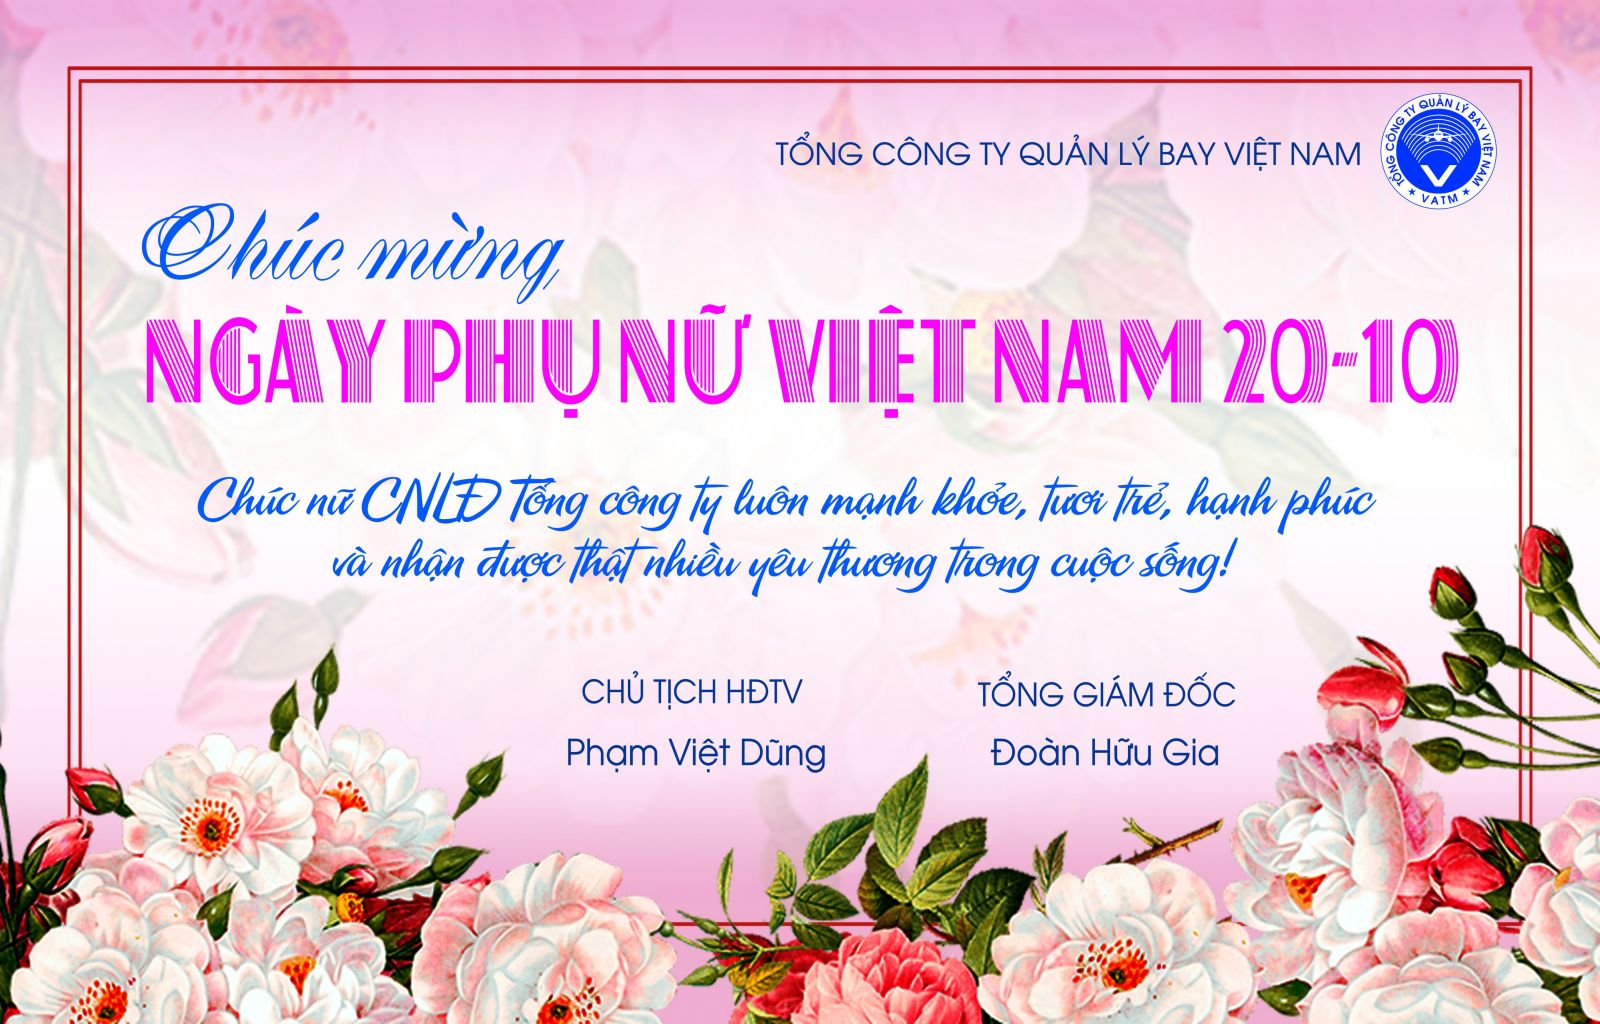 Ngày Phụ nữ Việt Nam 20/10: Hôm nay là Ngày Phụ nữ Việt Nam, một ngày để tôn vinh và tri ân các bà, mẹ, em, chị, bạn, vợ… của chúng ta. Chỉ cần một bức ảnh đẹp và anh đức, chúng ta có thể truyền tải đến những người phụ nữ thân yêu những lời chúc tốt đẹp nhất và gửi đi những cảm xúc chân thành nhất. Hãy xem ảnh để gửi đến phụ nữ một thông điệp đầy ý nghĩa nhé!